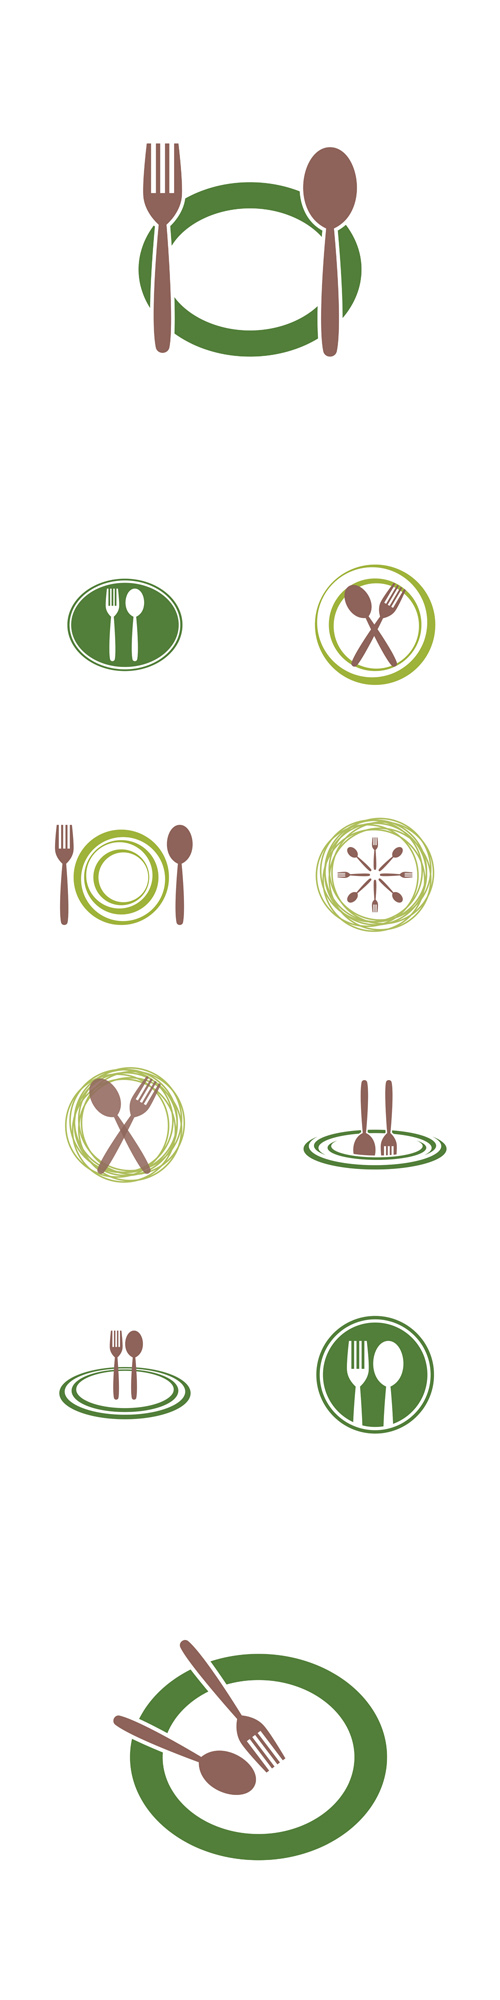 Vectors - Restaurant Logo Templates